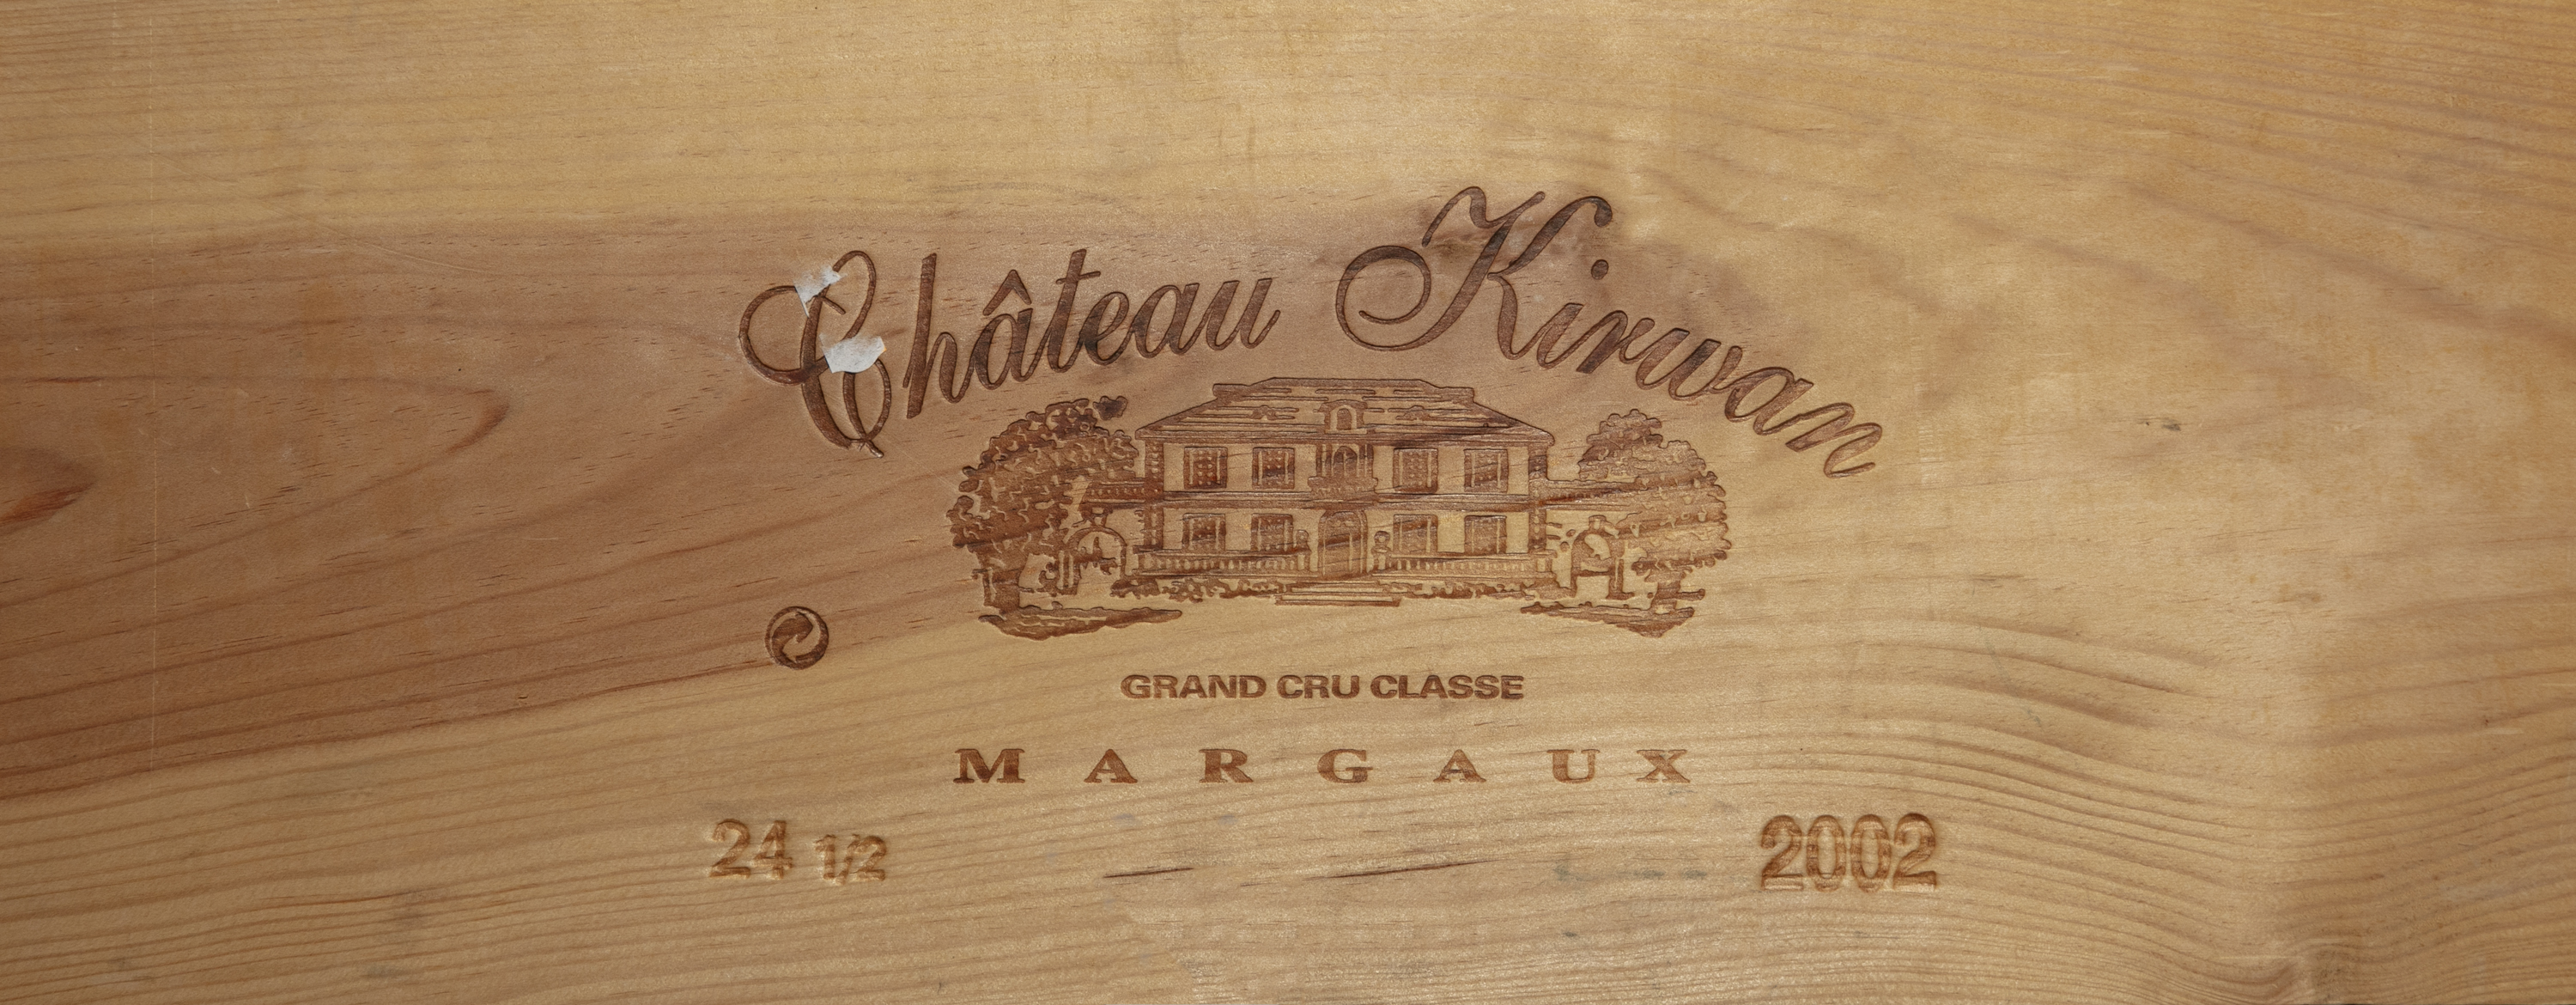 CHATEAU KIRWAN Margaux, 2002 1 case of 24 half bottles, unopened